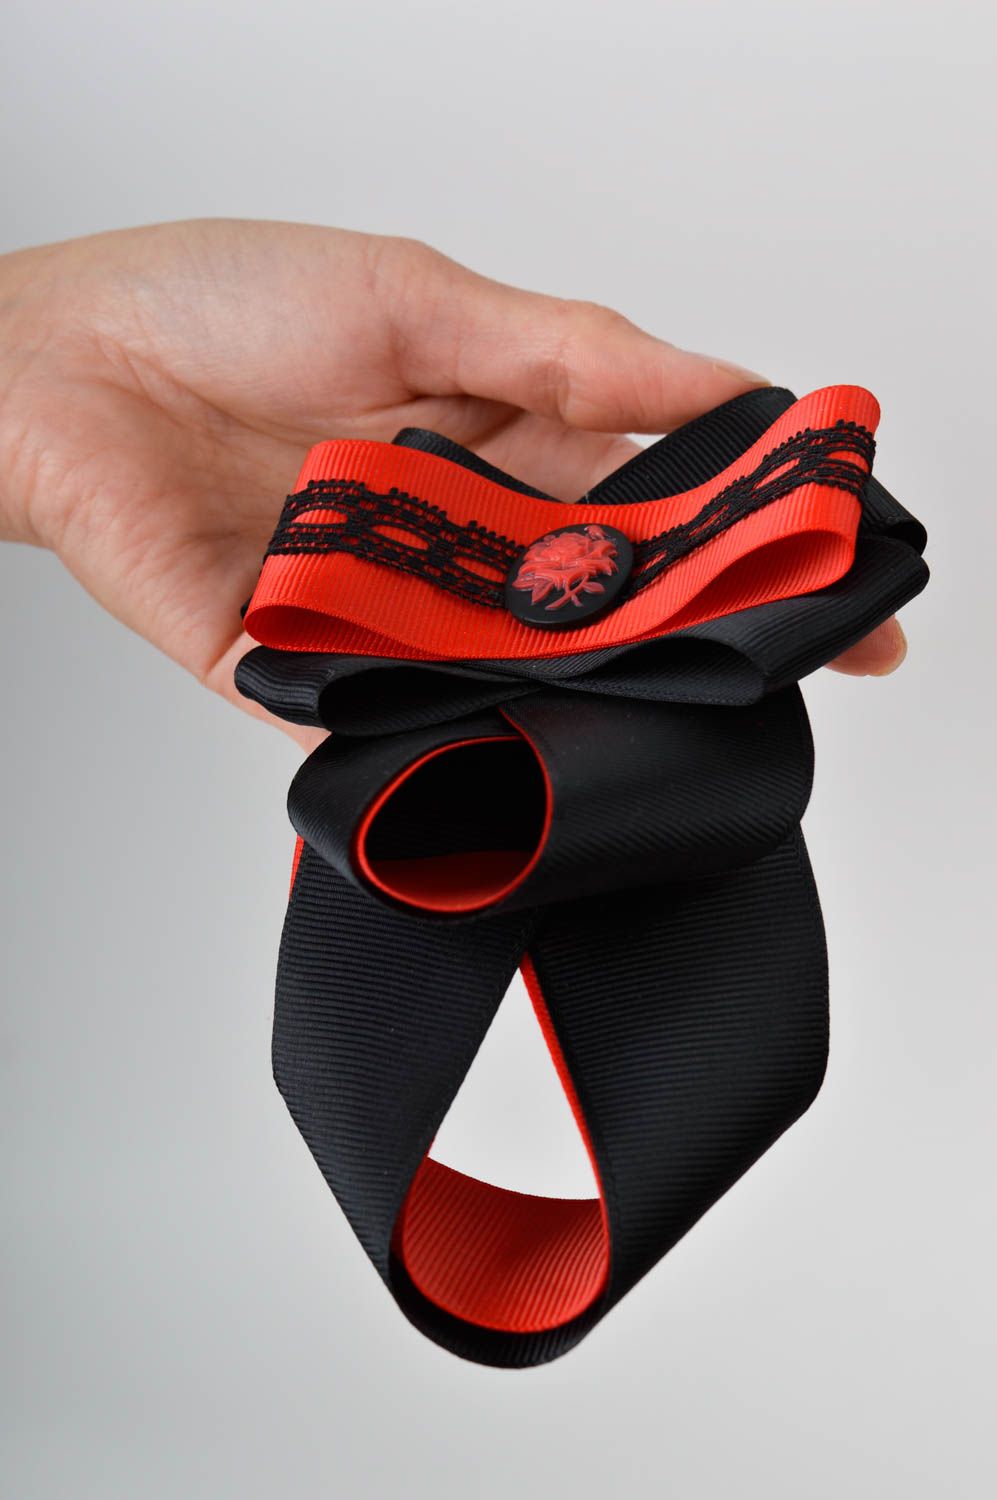 Cravate enfant fait main Accessoire design rouge et noir Vêtement enfant photo 2